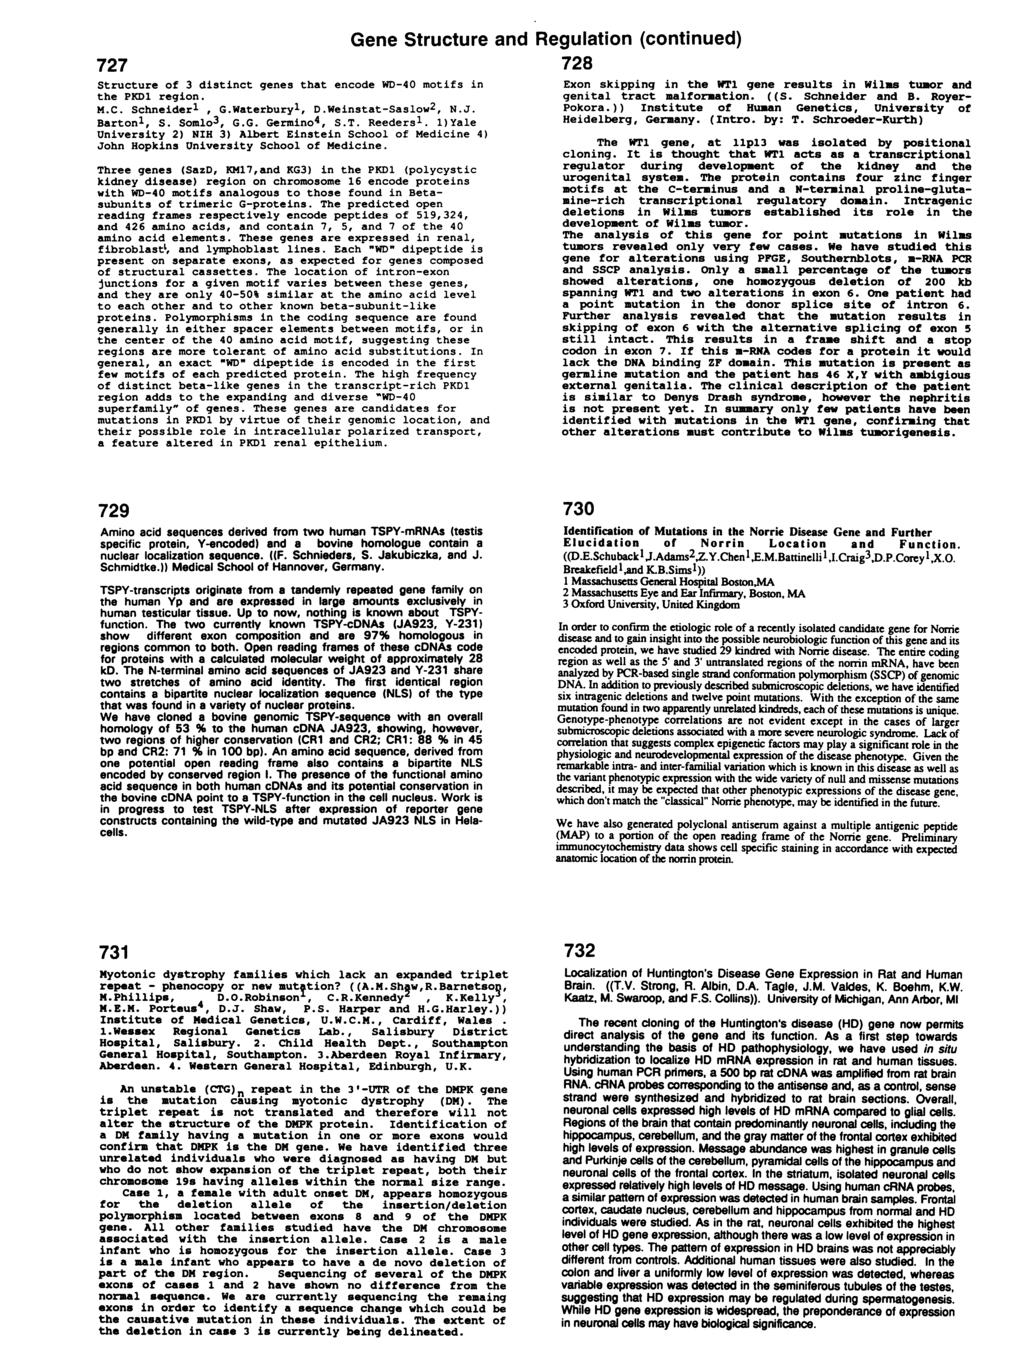 727 Gene Structure and Structure of 3 distinct genes that encode WD-40 motifs in the PKD1 region. M.C. Schneiderl, G.Waterburyl, D.Weinstat-Saslow2, N.J. Bartonl, S. Somlo3, G.G. Germino4, S.T.